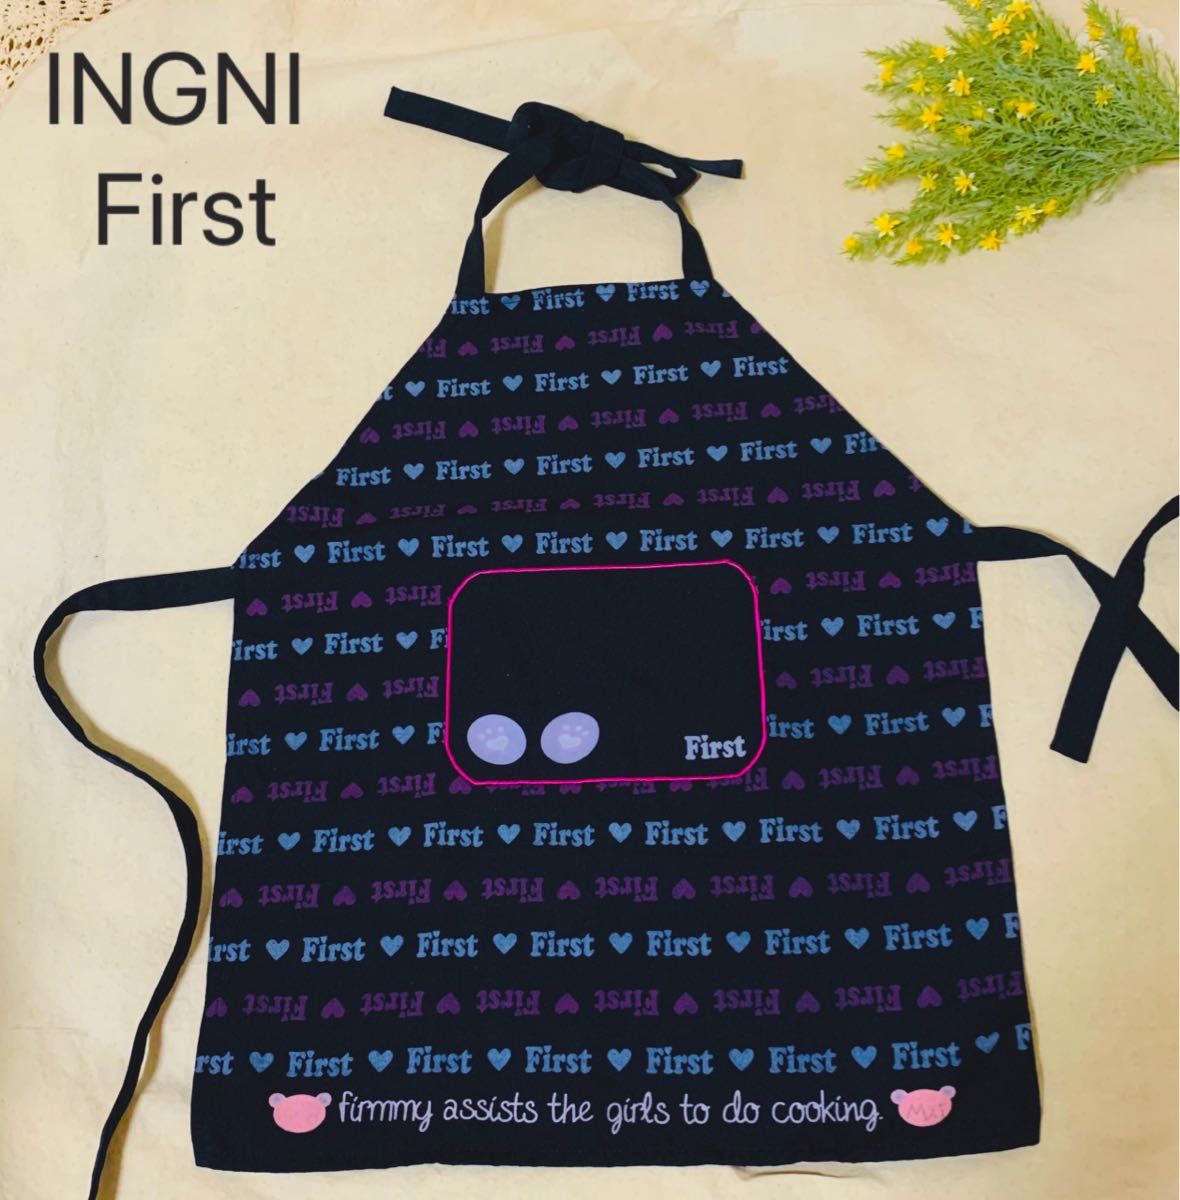 【名前記入あり】INGNI First エプロン 紺色